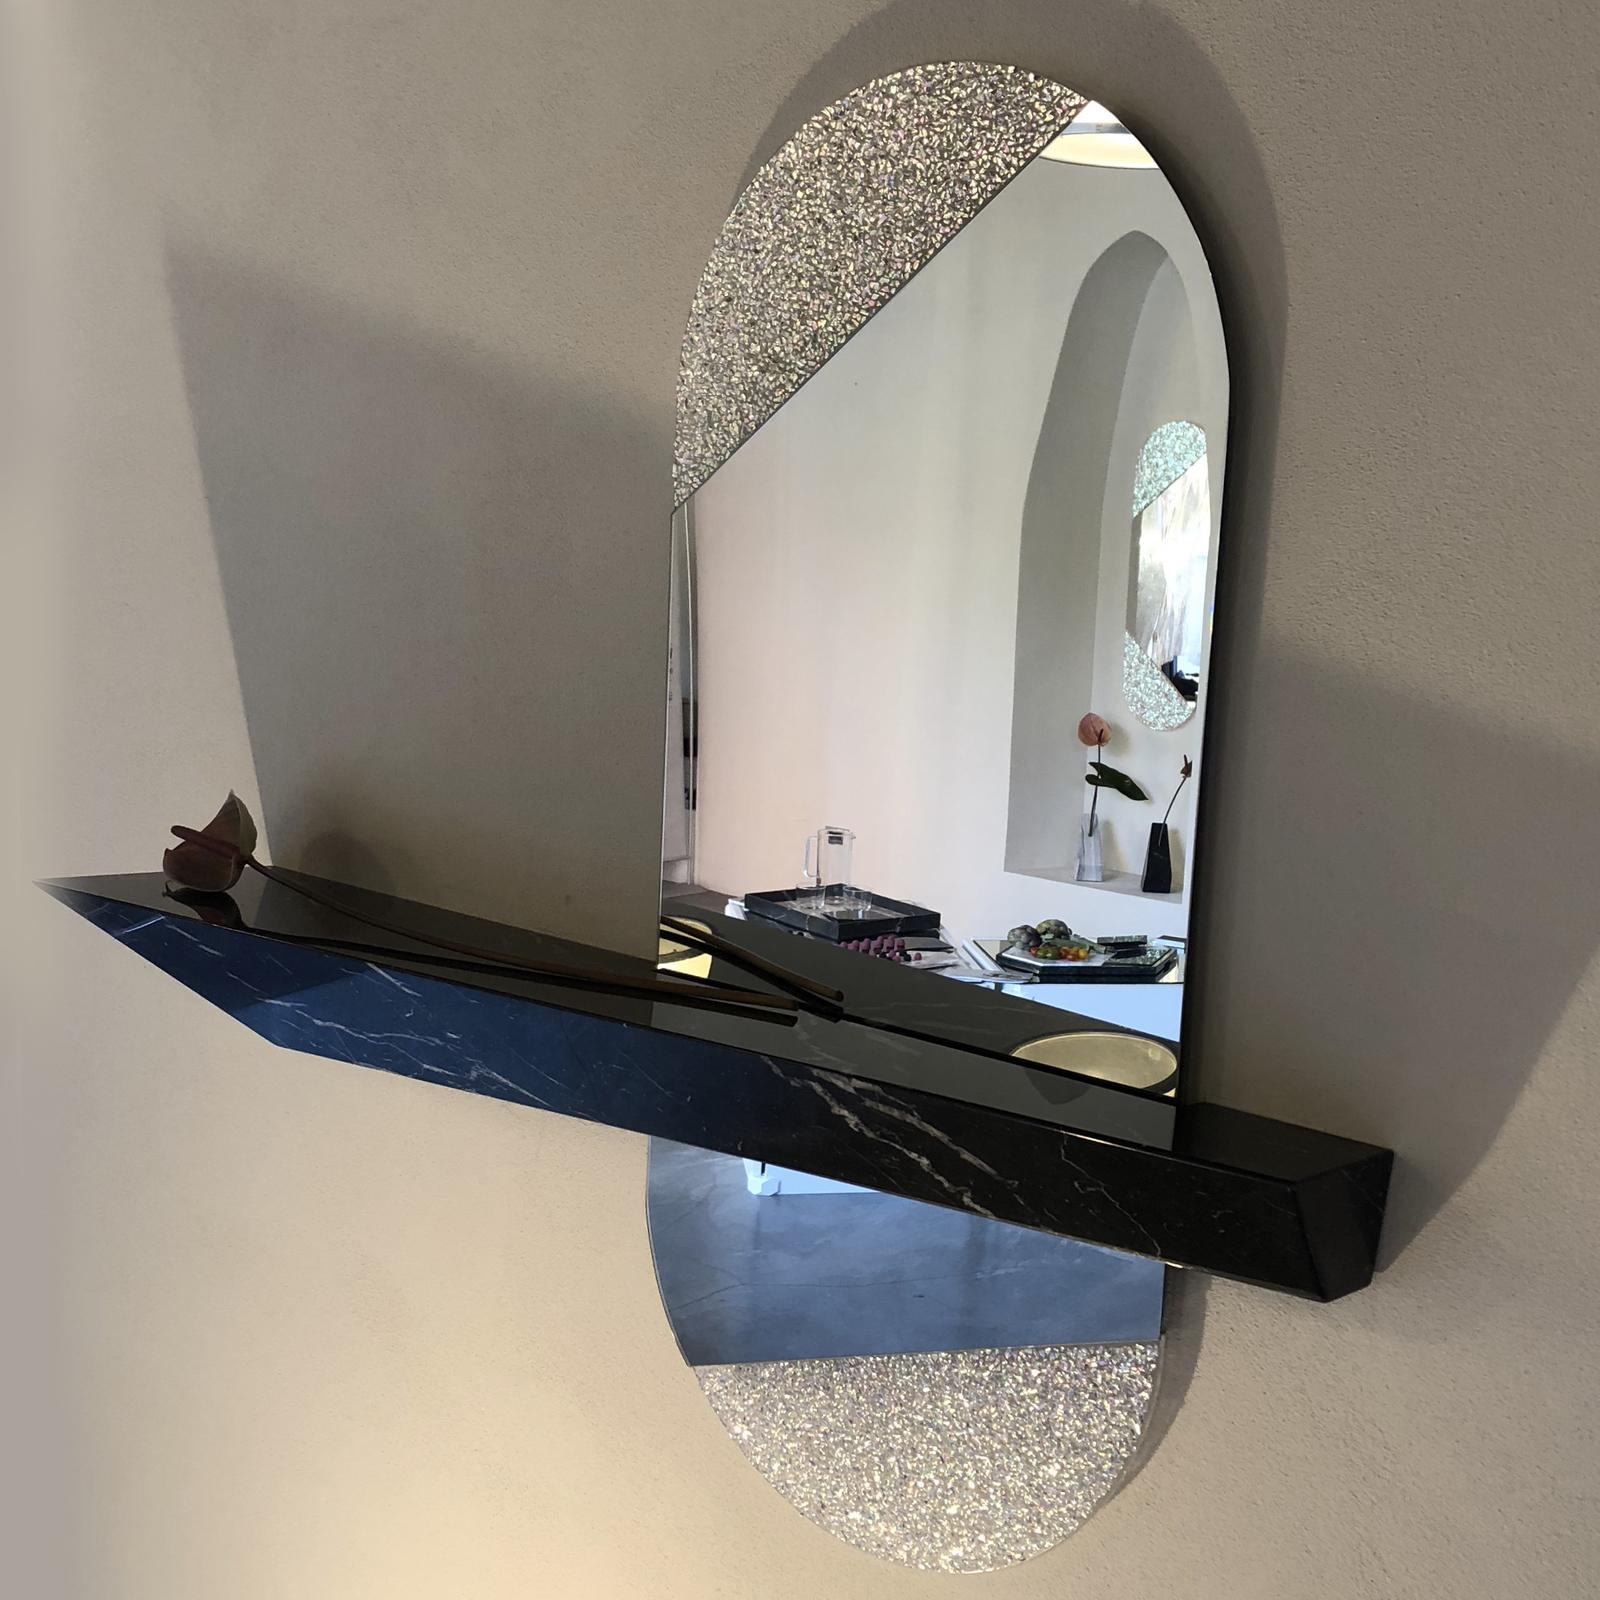 Dieser Spiegel ist eine atemberaubende Ergänzung für ein modernes Zuhause und eignet sich ideal für den Eingangsbereich. Es besteht aus einer handgefertigten schwarzen Marquina-Ablage mit glänzender Oberfläche, die wie ein längliches Prisma geformt